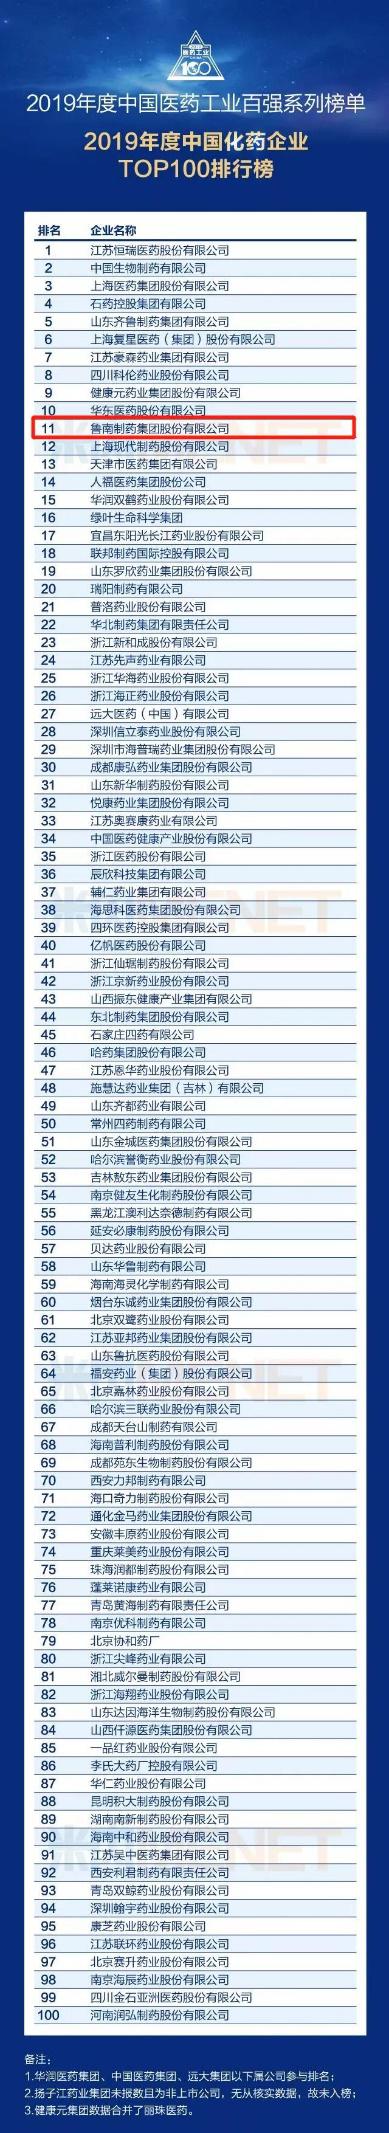 稳步前进！鲁南制药荣登2019年度中国医药百强（化药企业）榜第11位